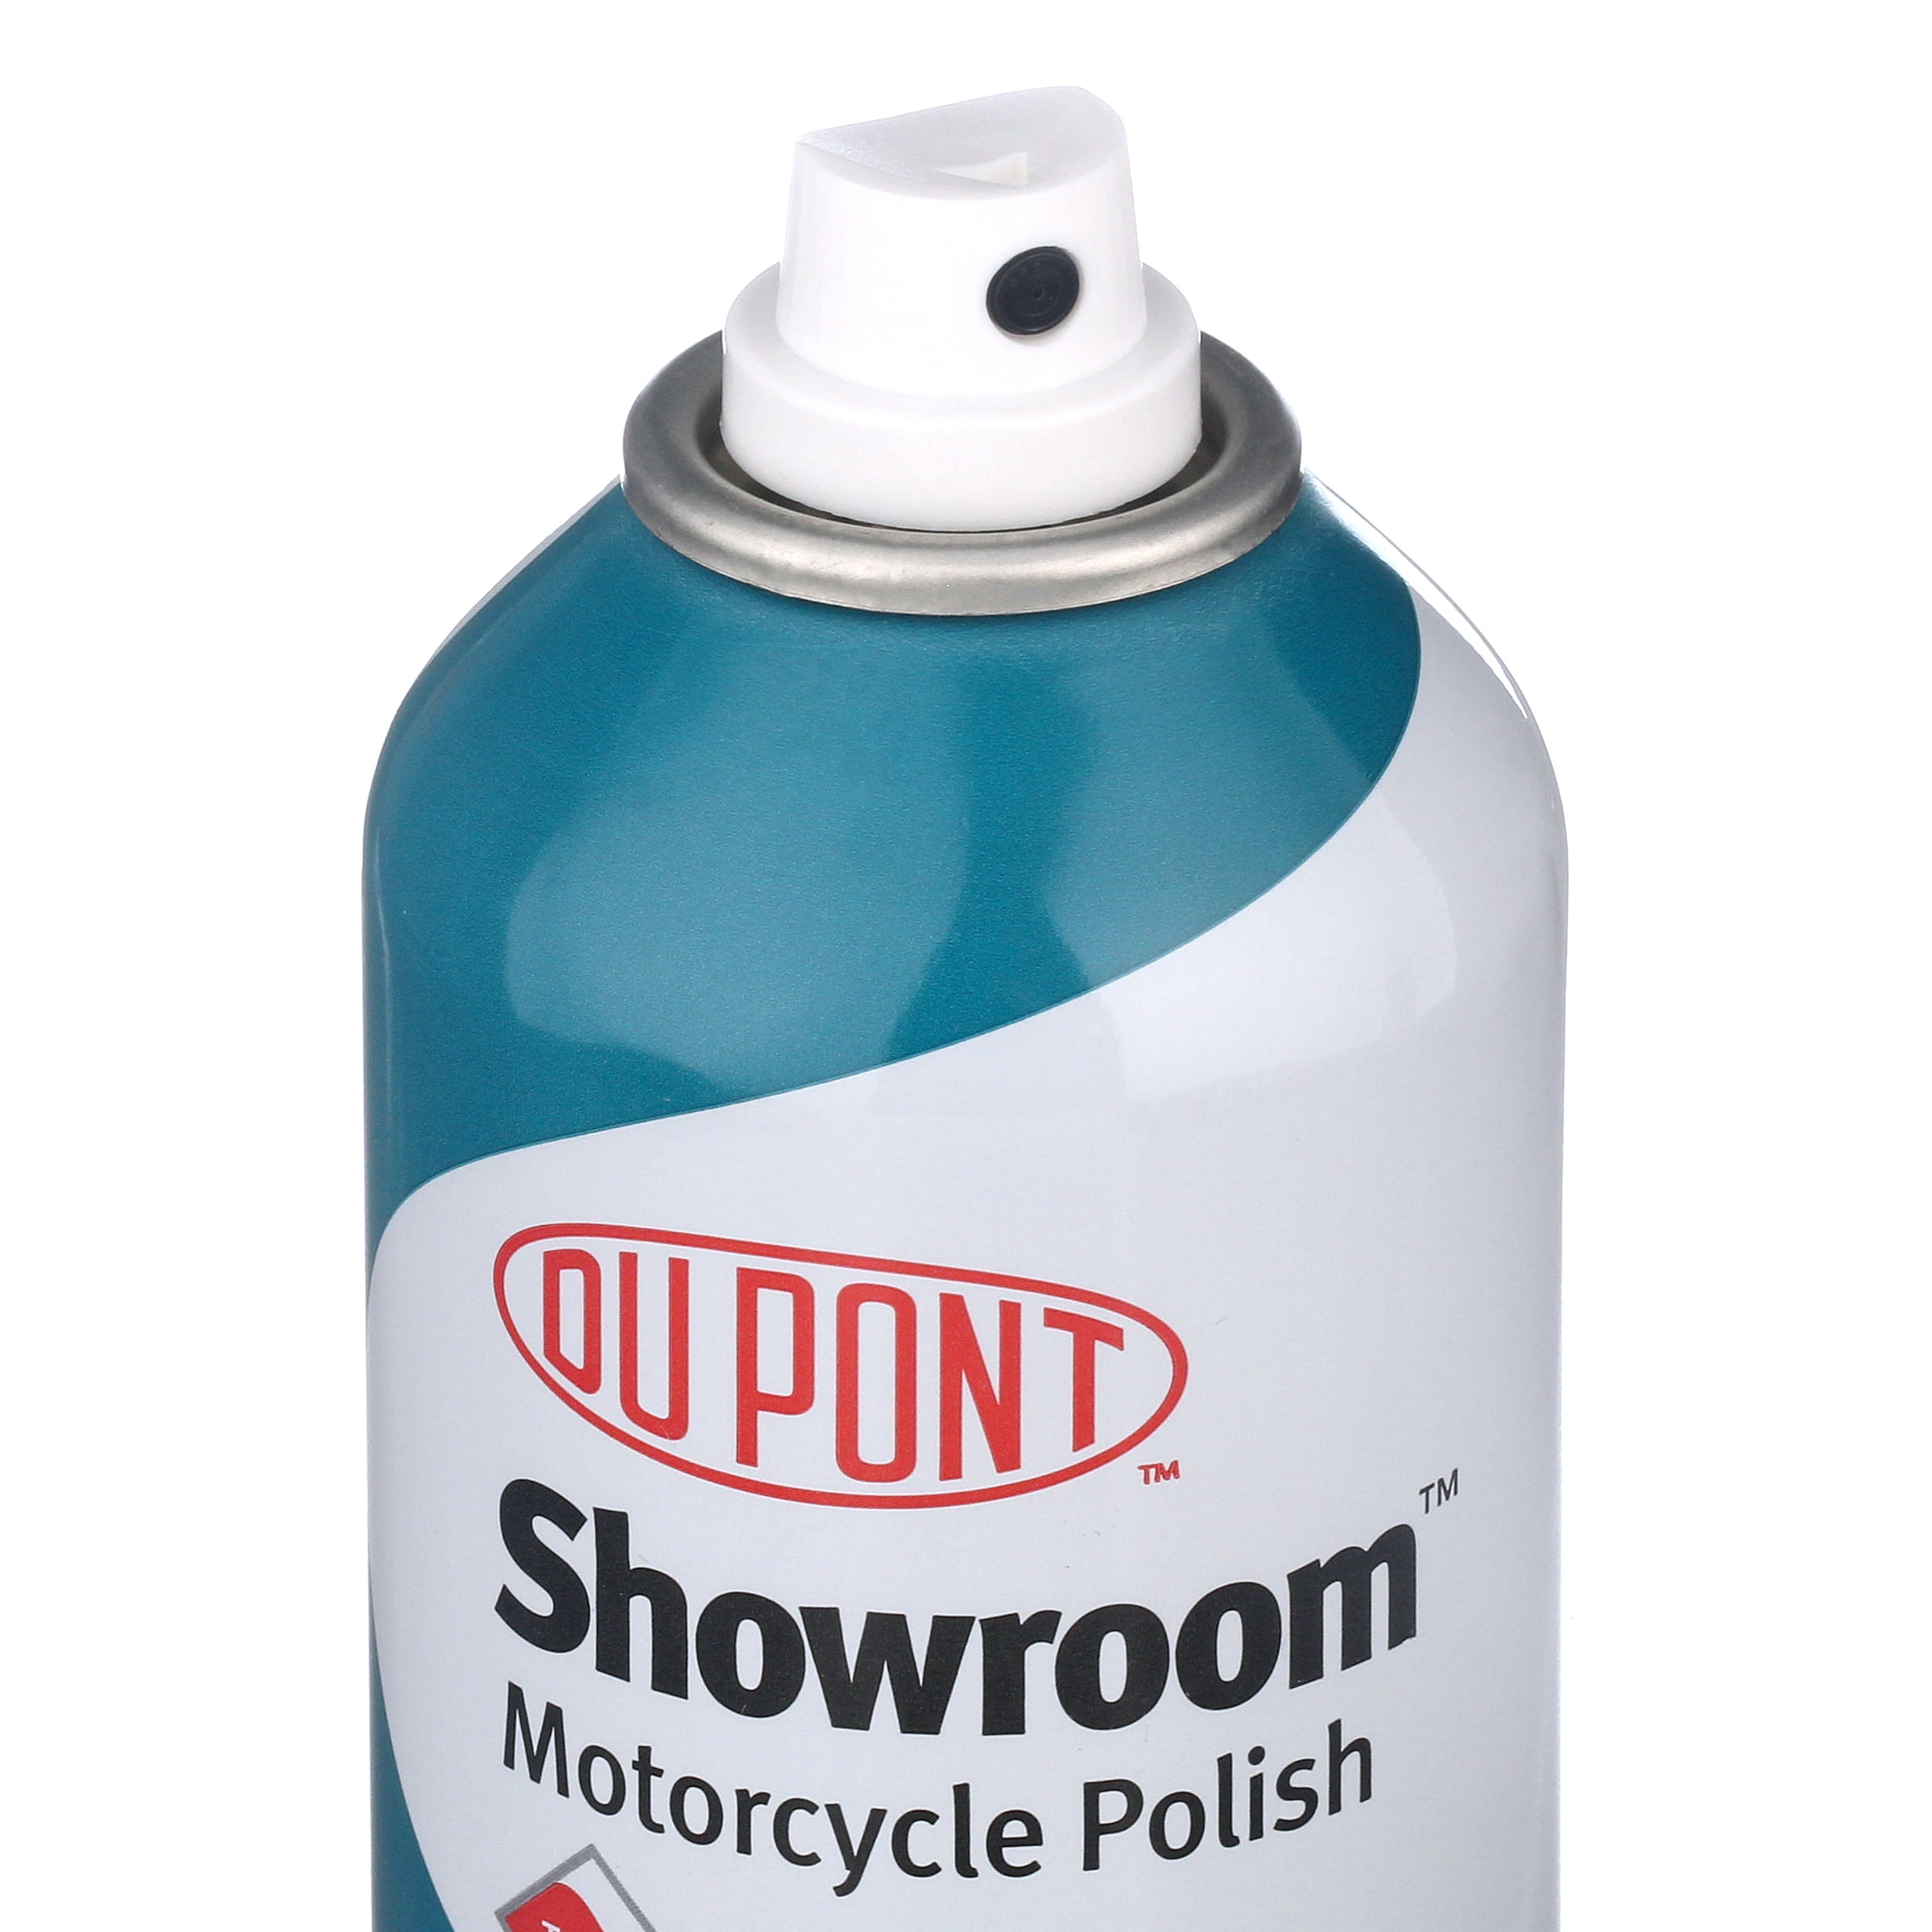 Dupont Rubbing Compound 12 oz Metal Can Vintage Car Details Clean